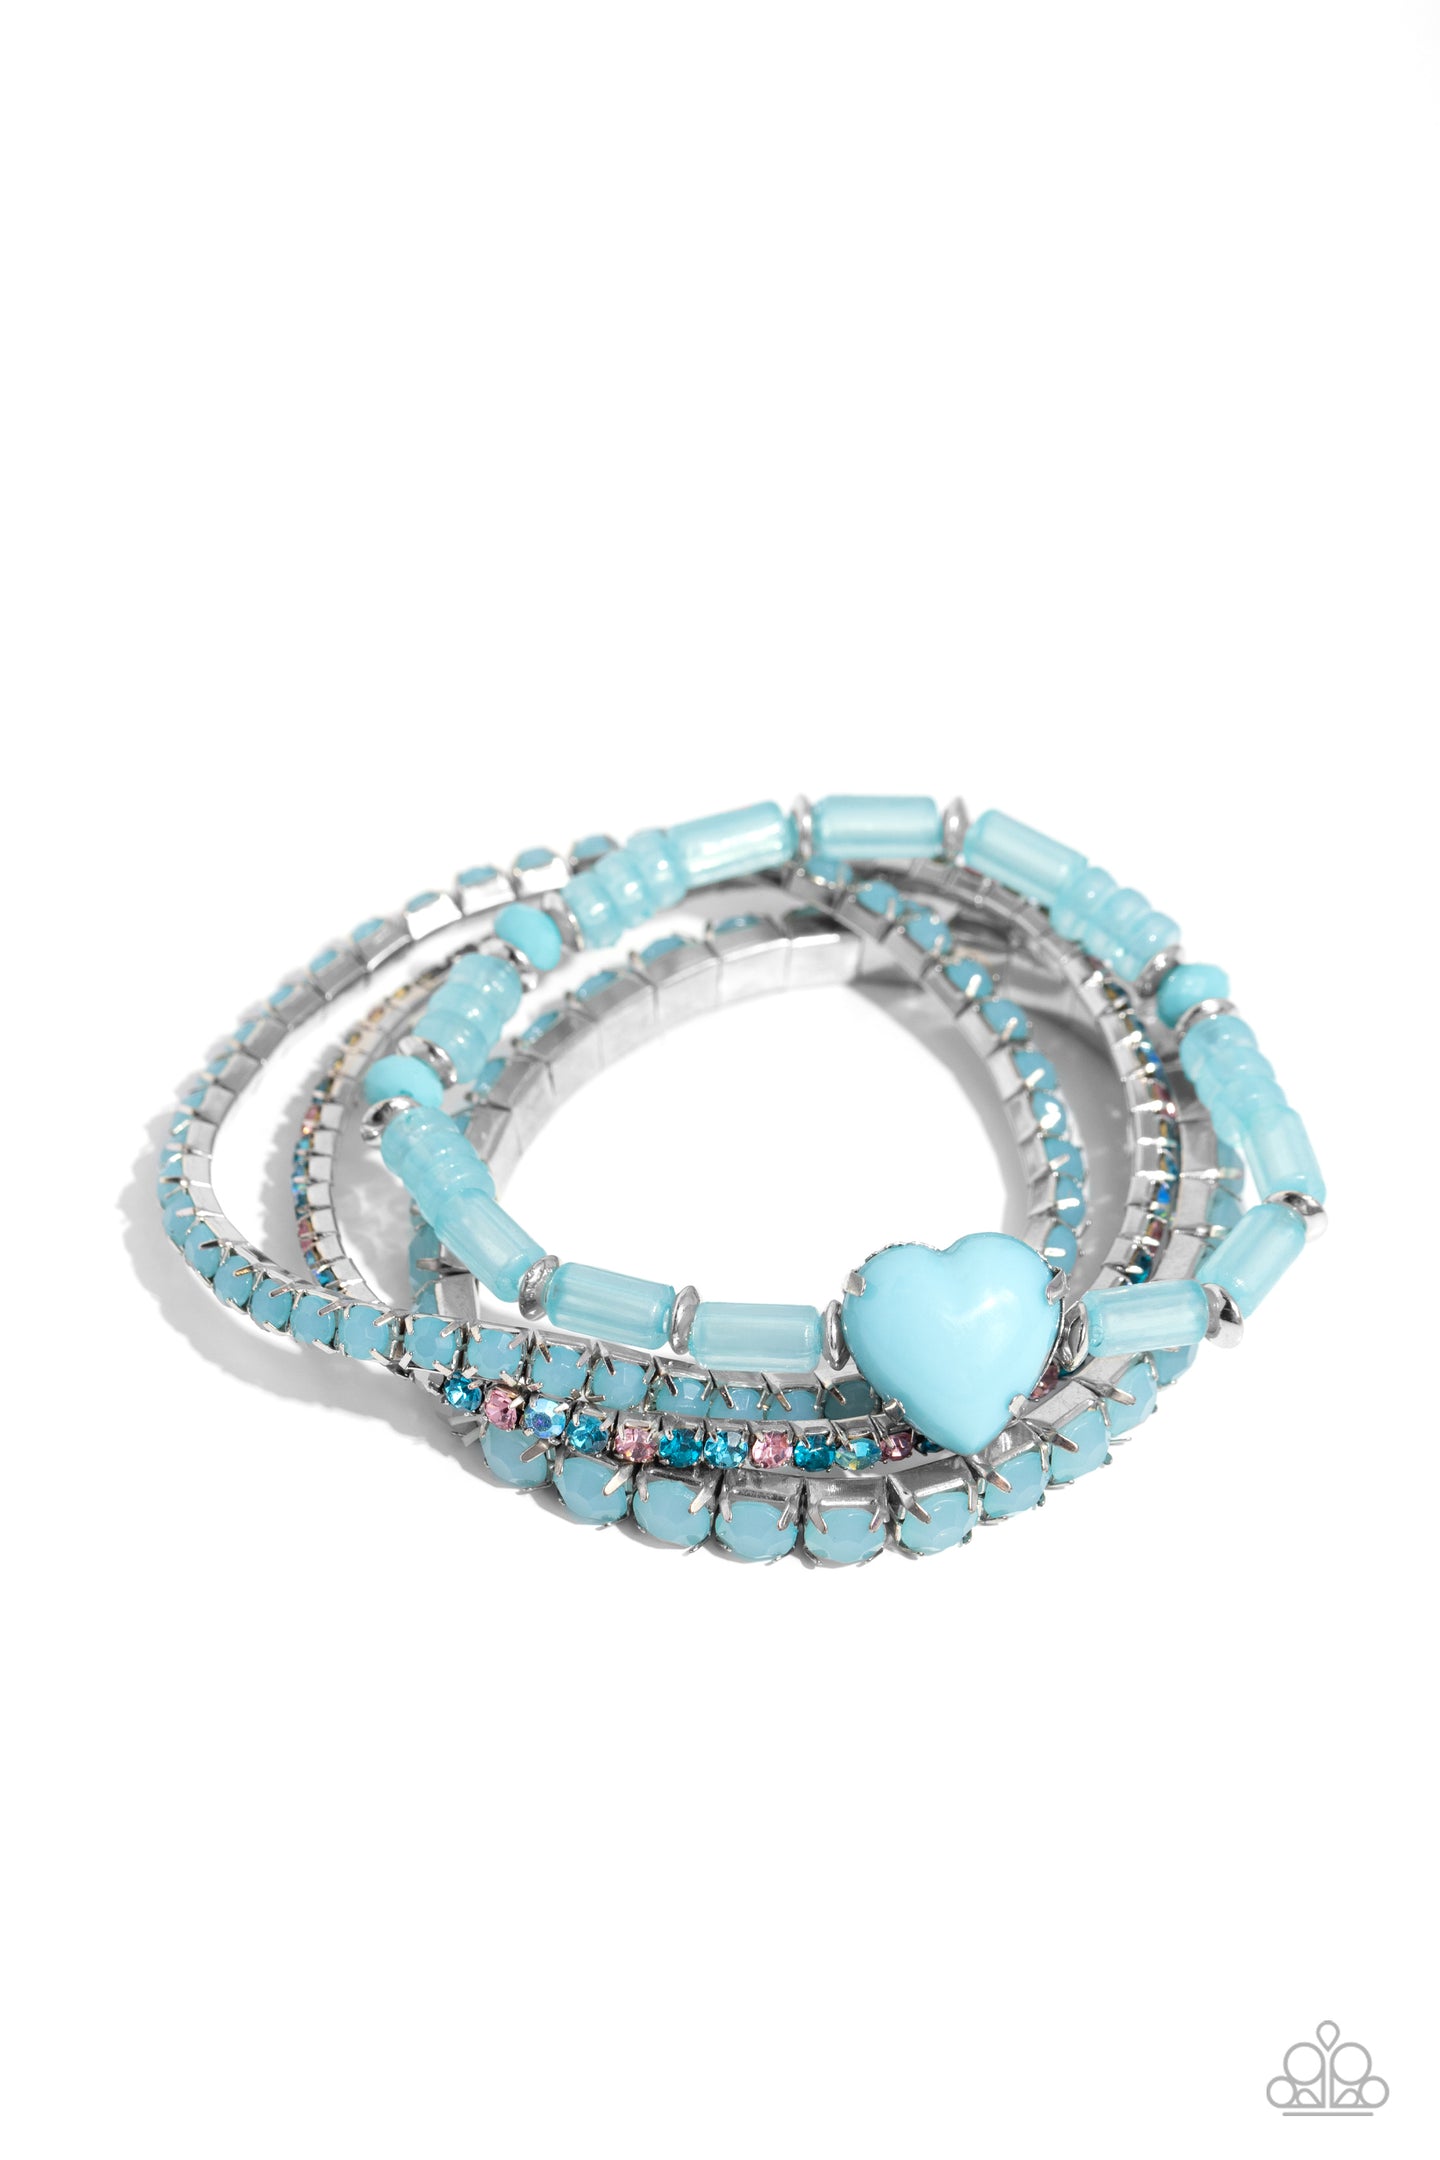 True Loves Theme - Blue bracelet